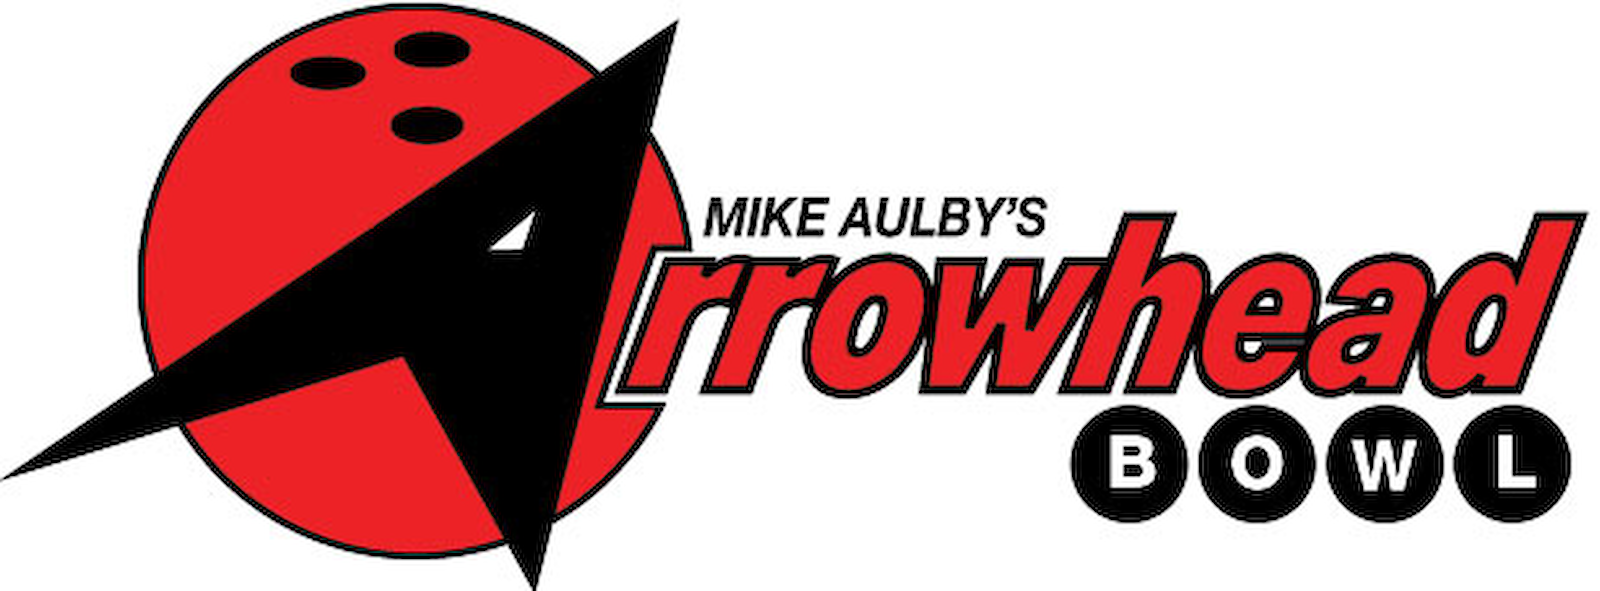 Mike Aulby's Arrowhead Bowl